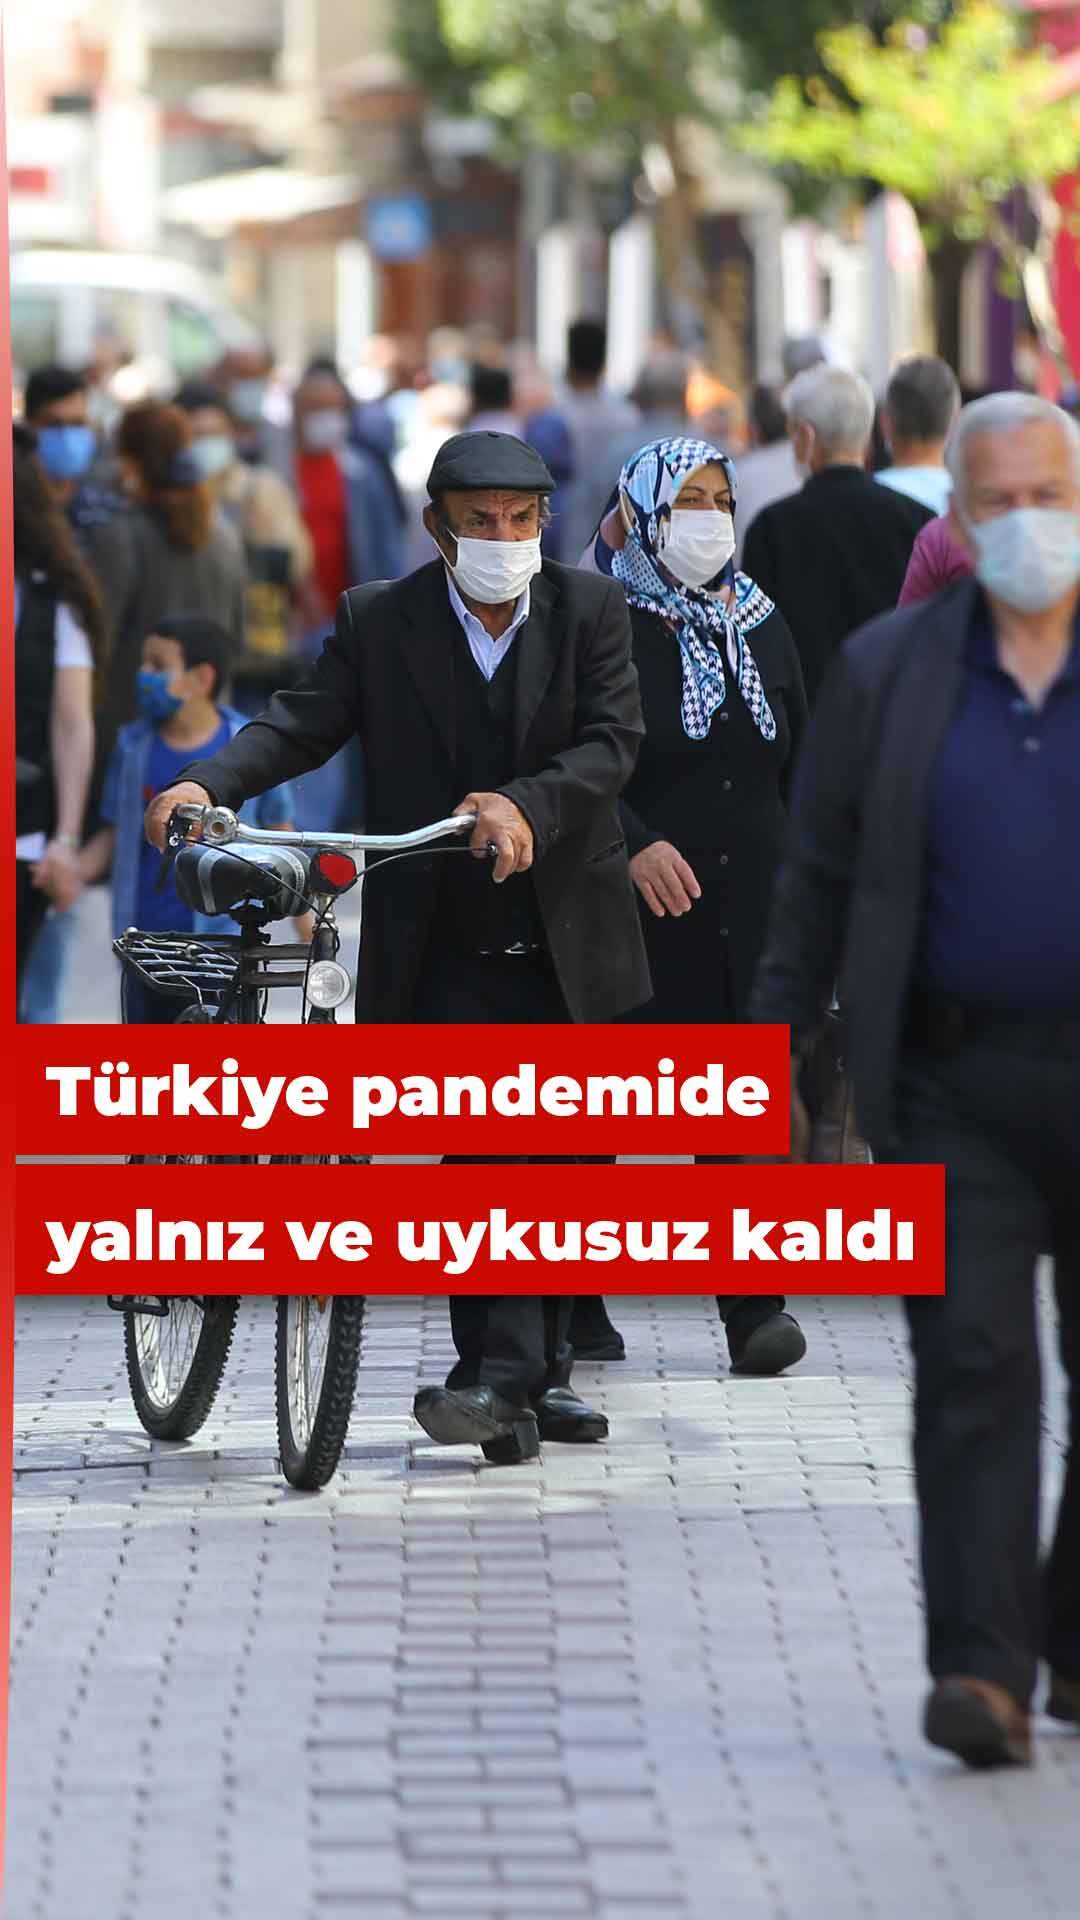 Pandemi, Türkiye’yi uykusuz ve yalnız bıraktı!